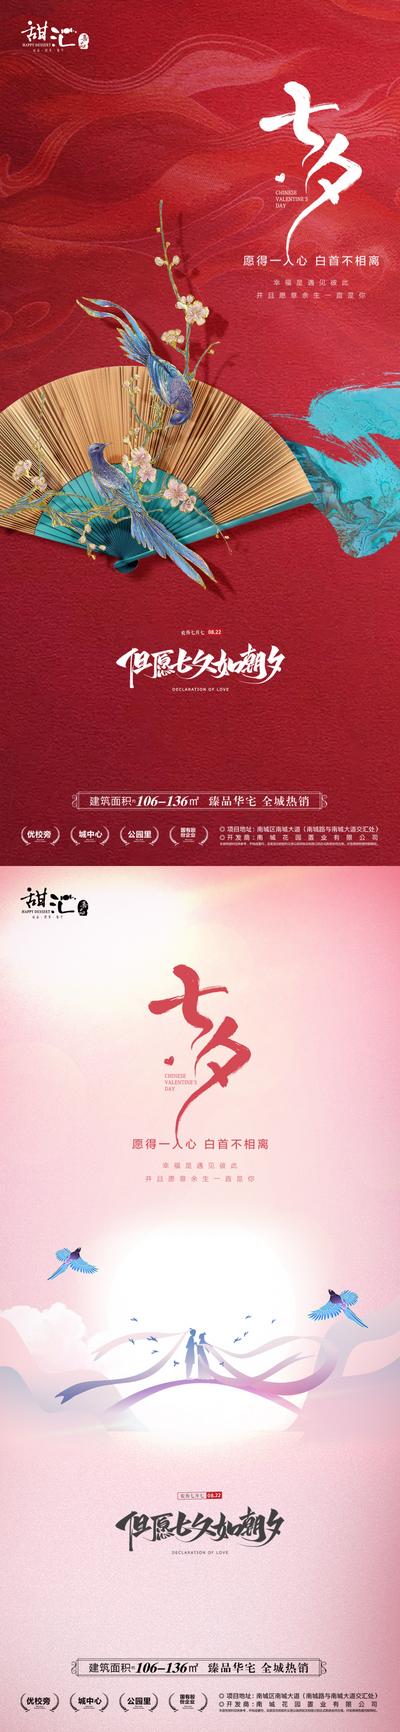 南门网 海报 地产 中国传统节日 情人节 七夕 喜鹊 浪漫 创意